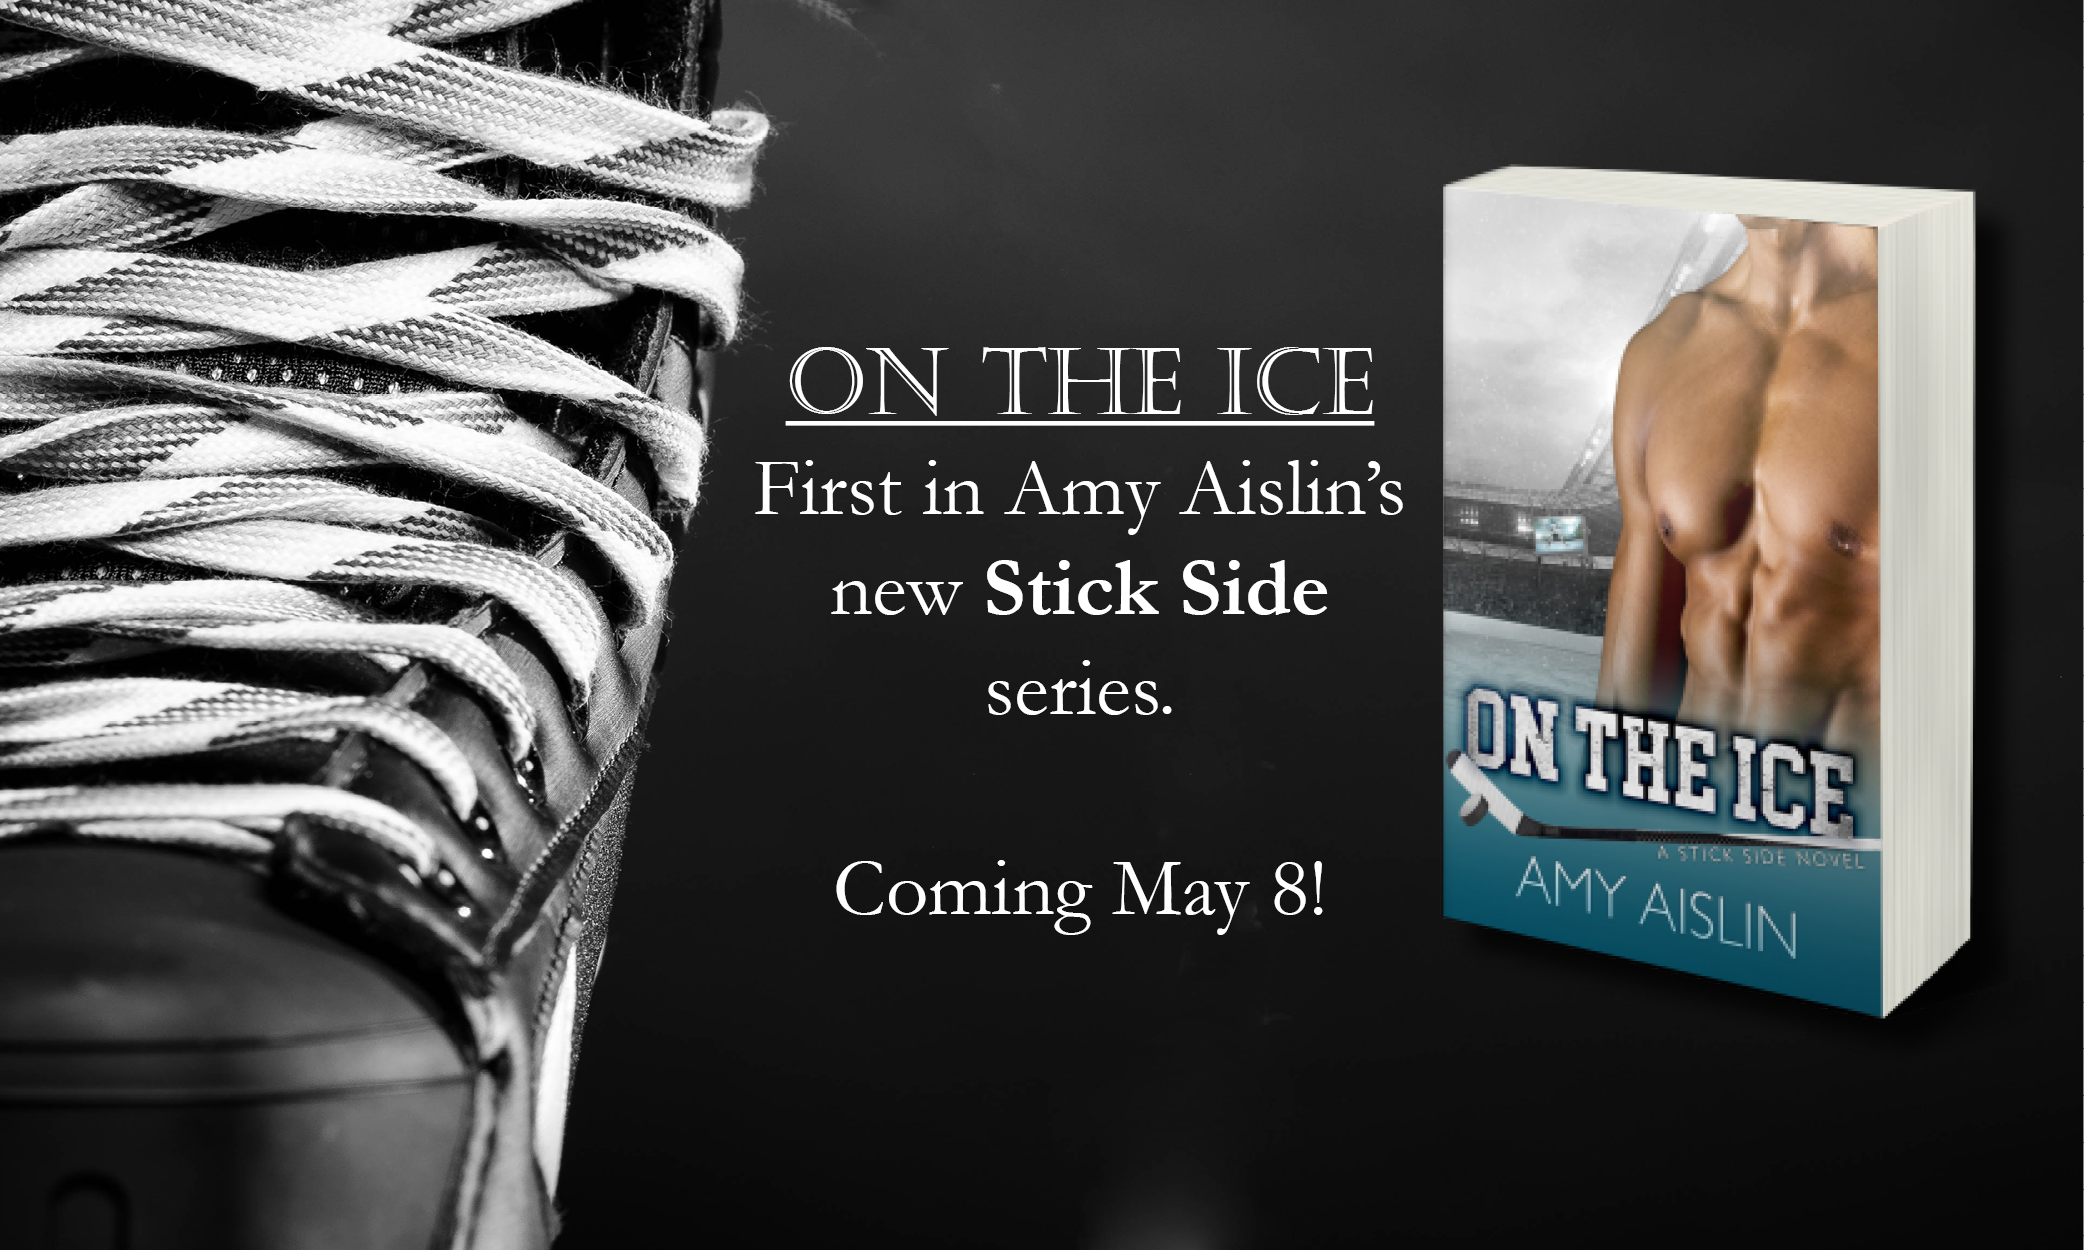 On the Ice Amy Aislin